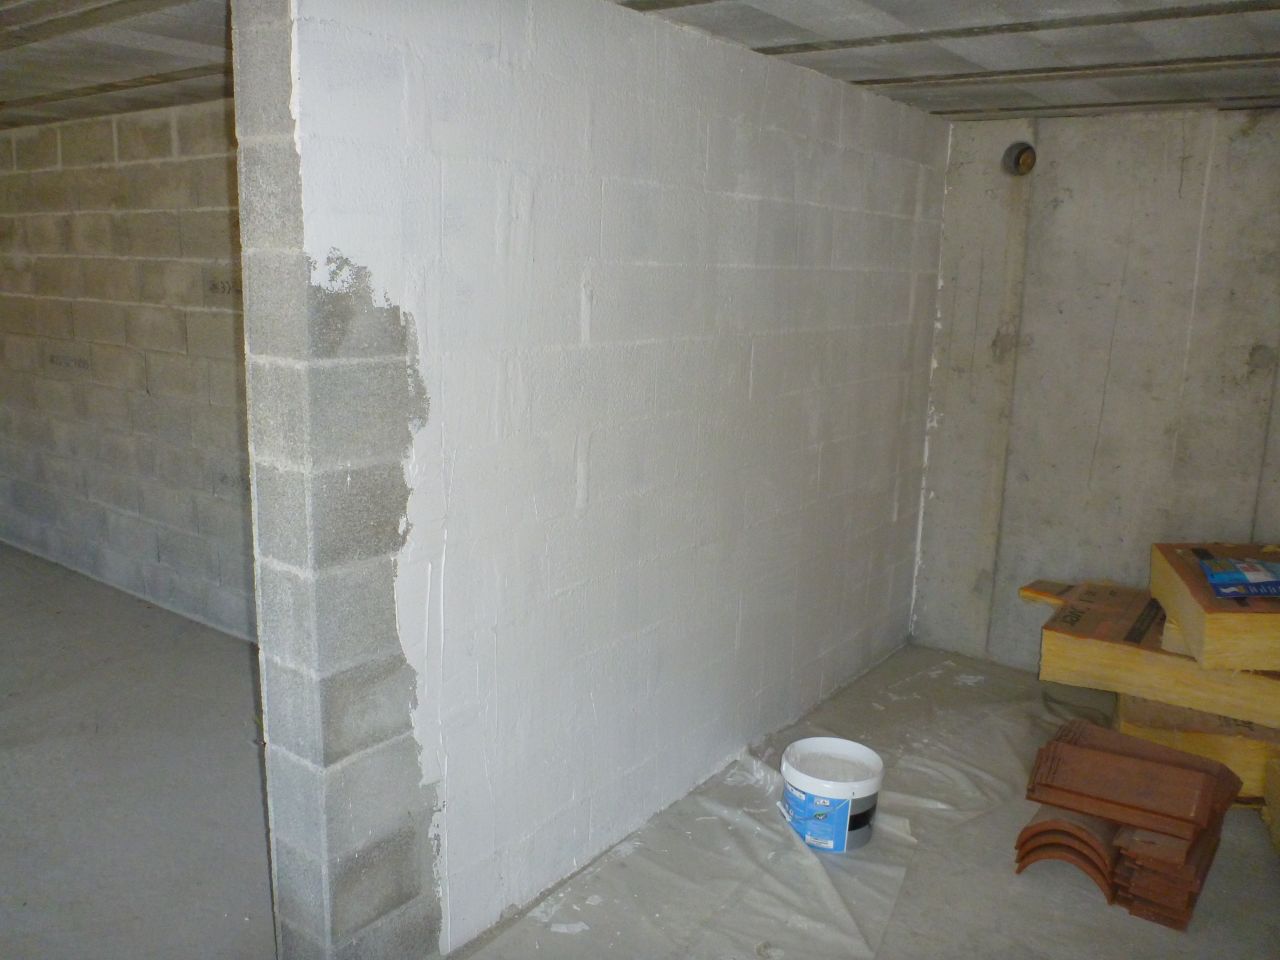 Une couche d'enduire afin de lisser les parpaings et avoir une certaine uniformité avec les murs en béton